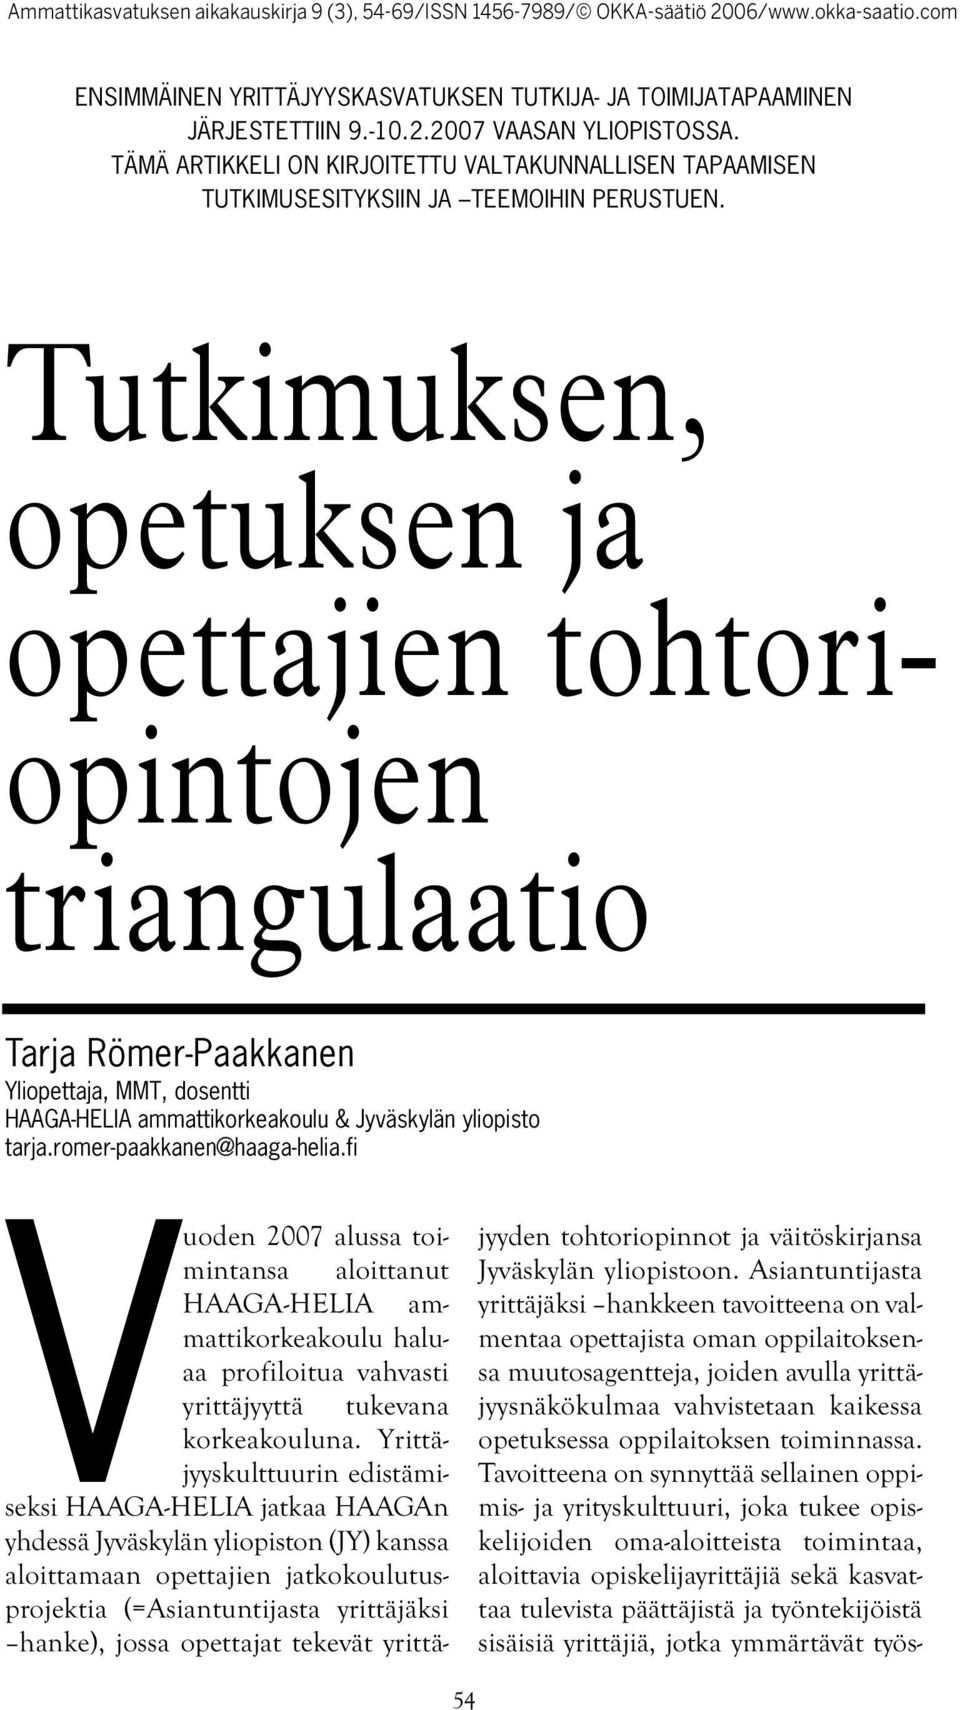 Tutkimuksen, opetuksen ja opettajien tohtoriopintojen triangulaatio Tarja Römer-Paakkanen Yliopettaja, MMT, dosentti HAAGA-HELIA ammattikorkeakoulu & Jyväskylän yliopisto tarja.